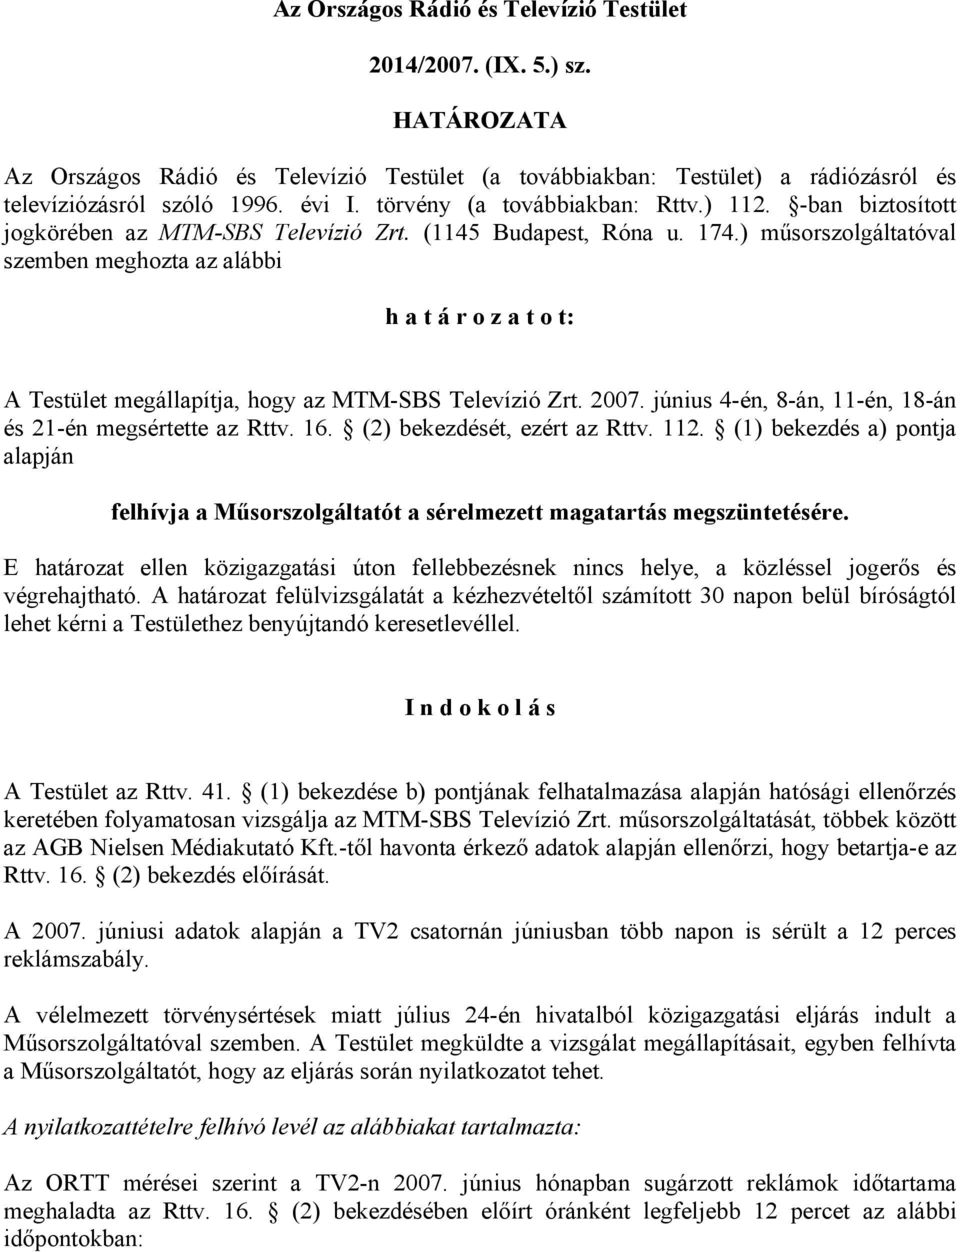 Az Országos Rádió és Televízió Testület. 2014/2007. (IX. 5.) sz. HATÁROZATA  - PDF Ingyenes letöltés